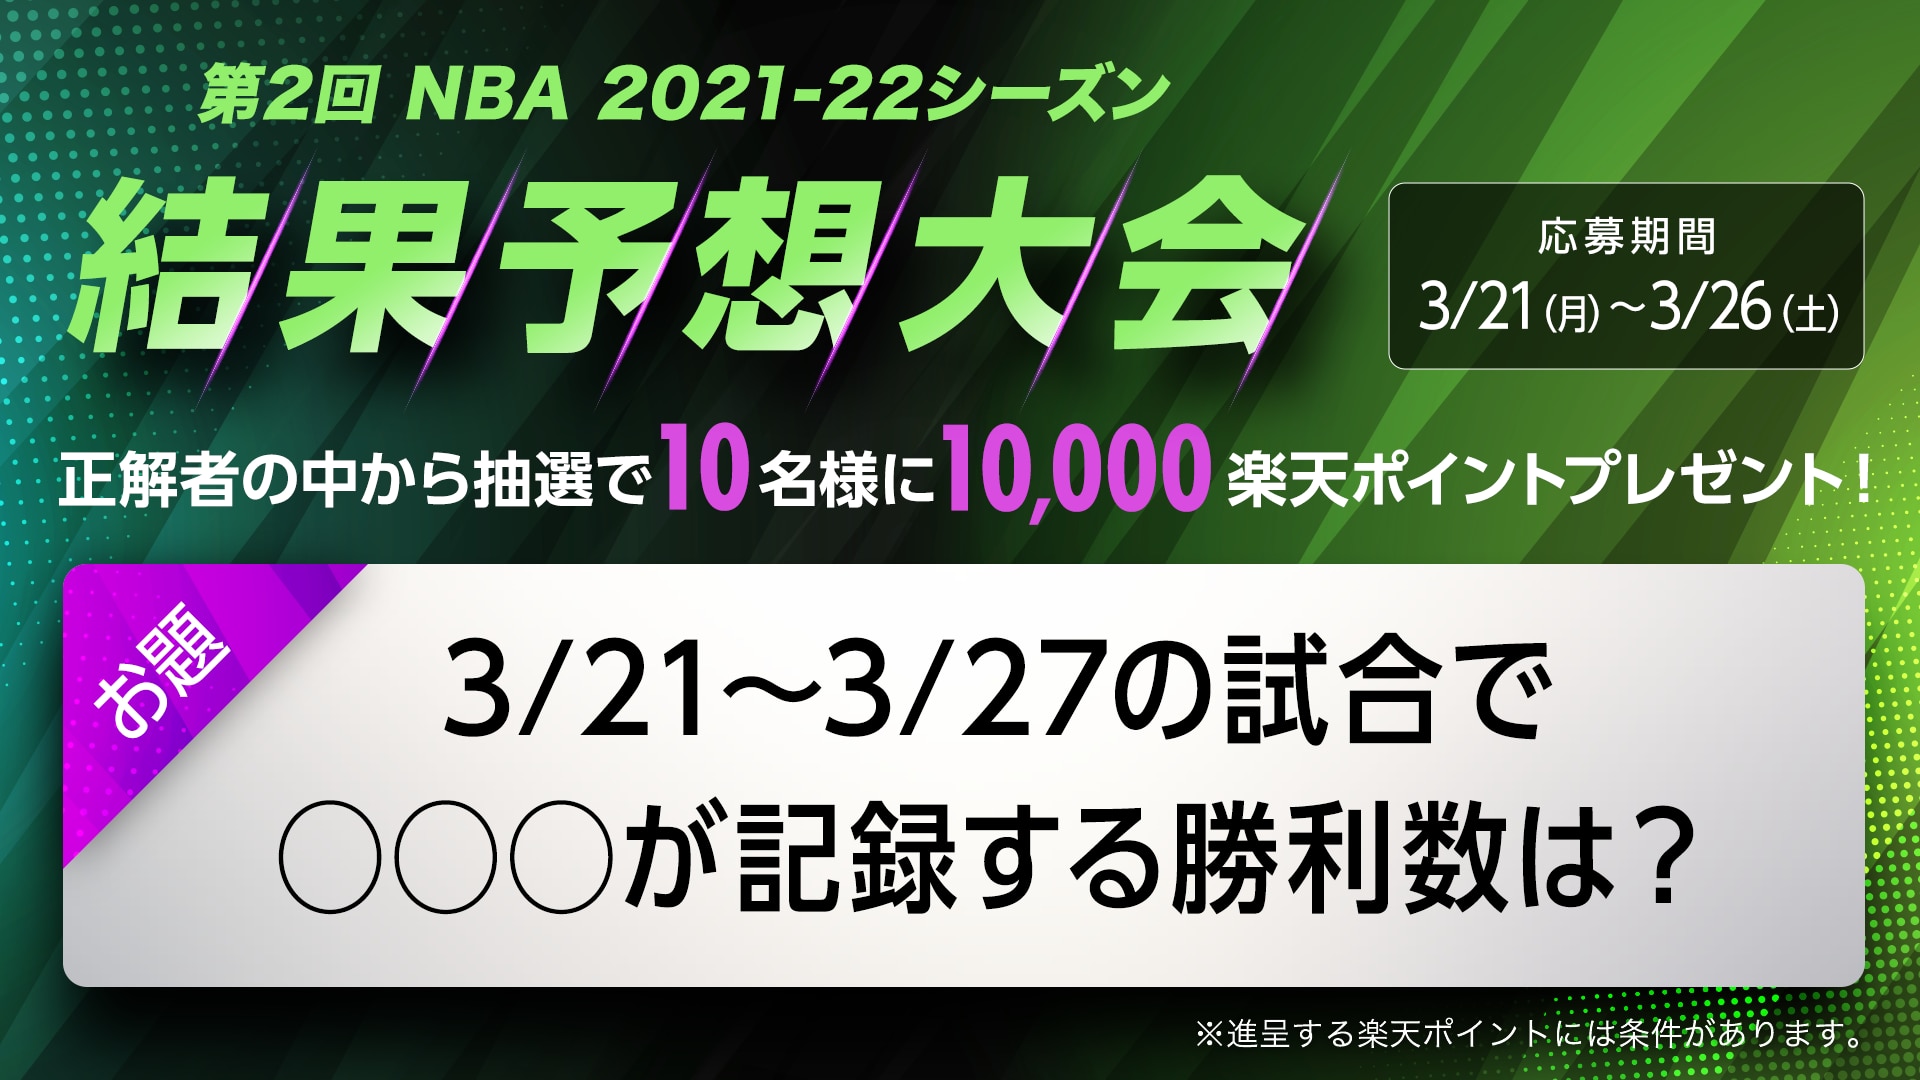 【1万期間限定楽天ポイントが当たる】『第2回 NBA 2021-22シーズン 結果予想大会』開催！ お題は「ヒートの勝利数」